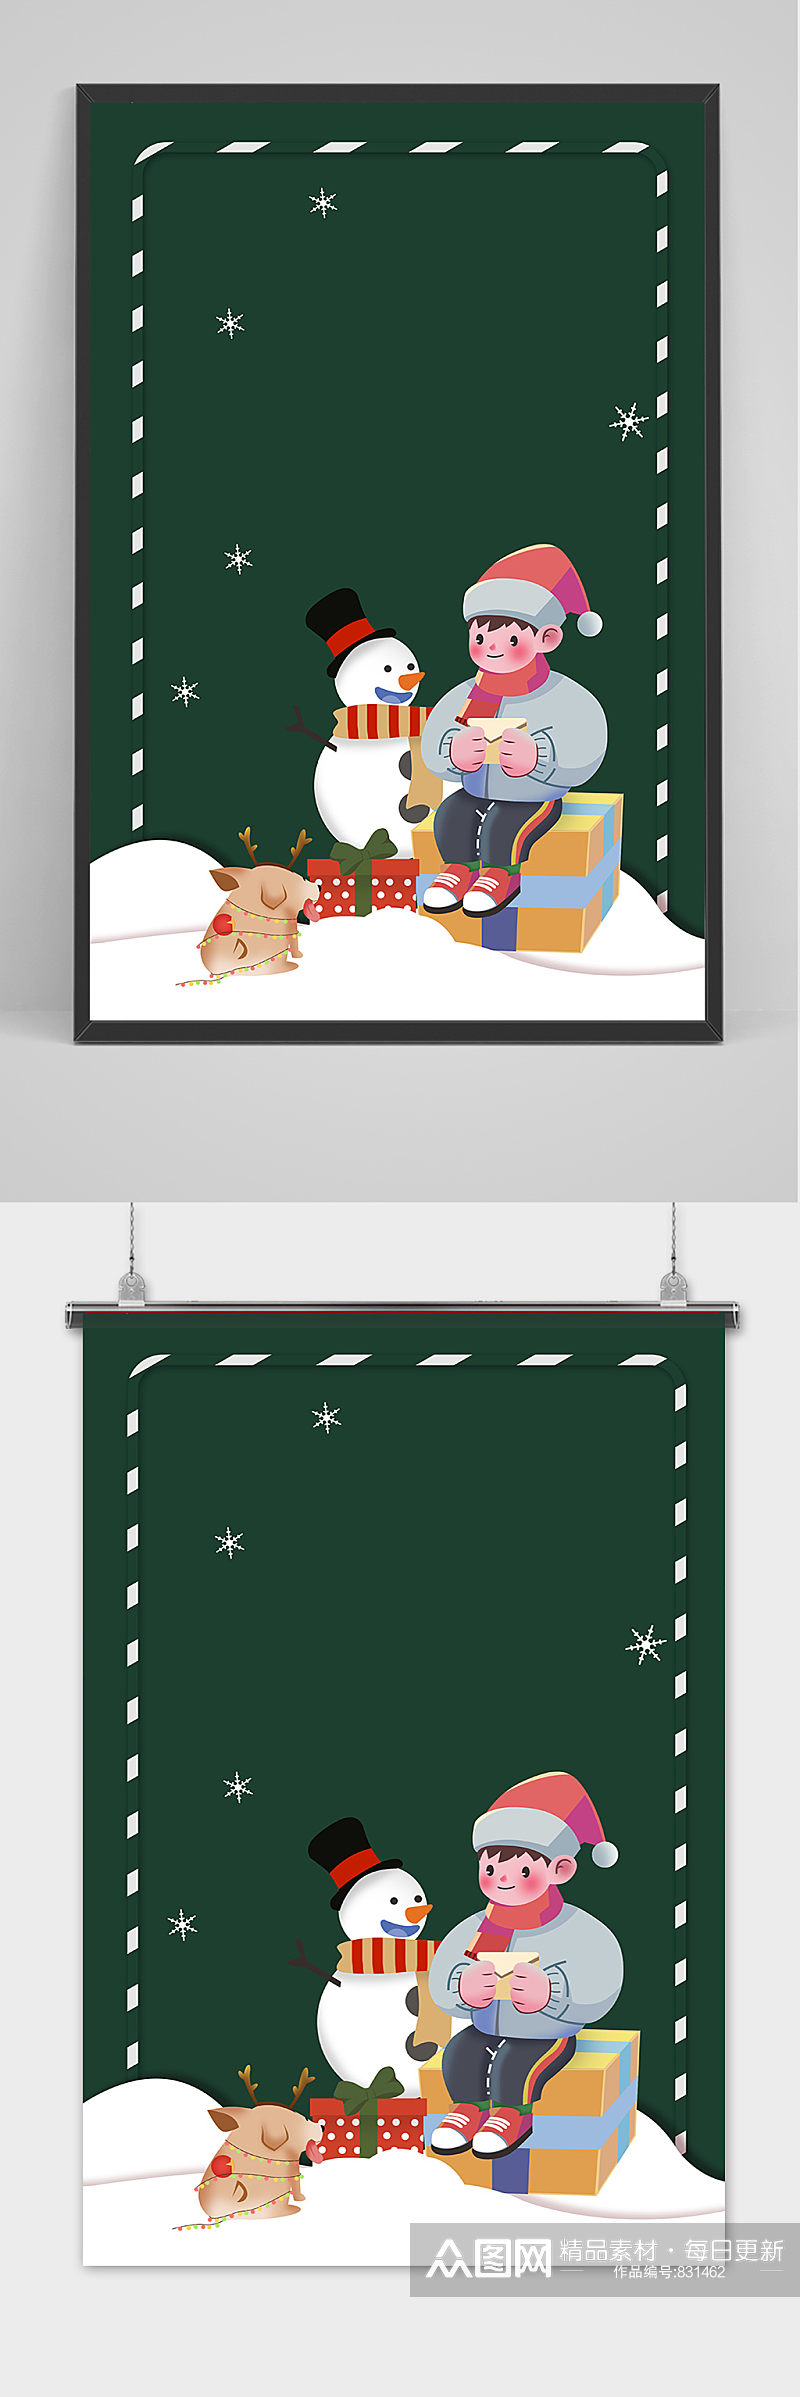 手绘可爱卡通风格圣诞户外海报展板背景素材